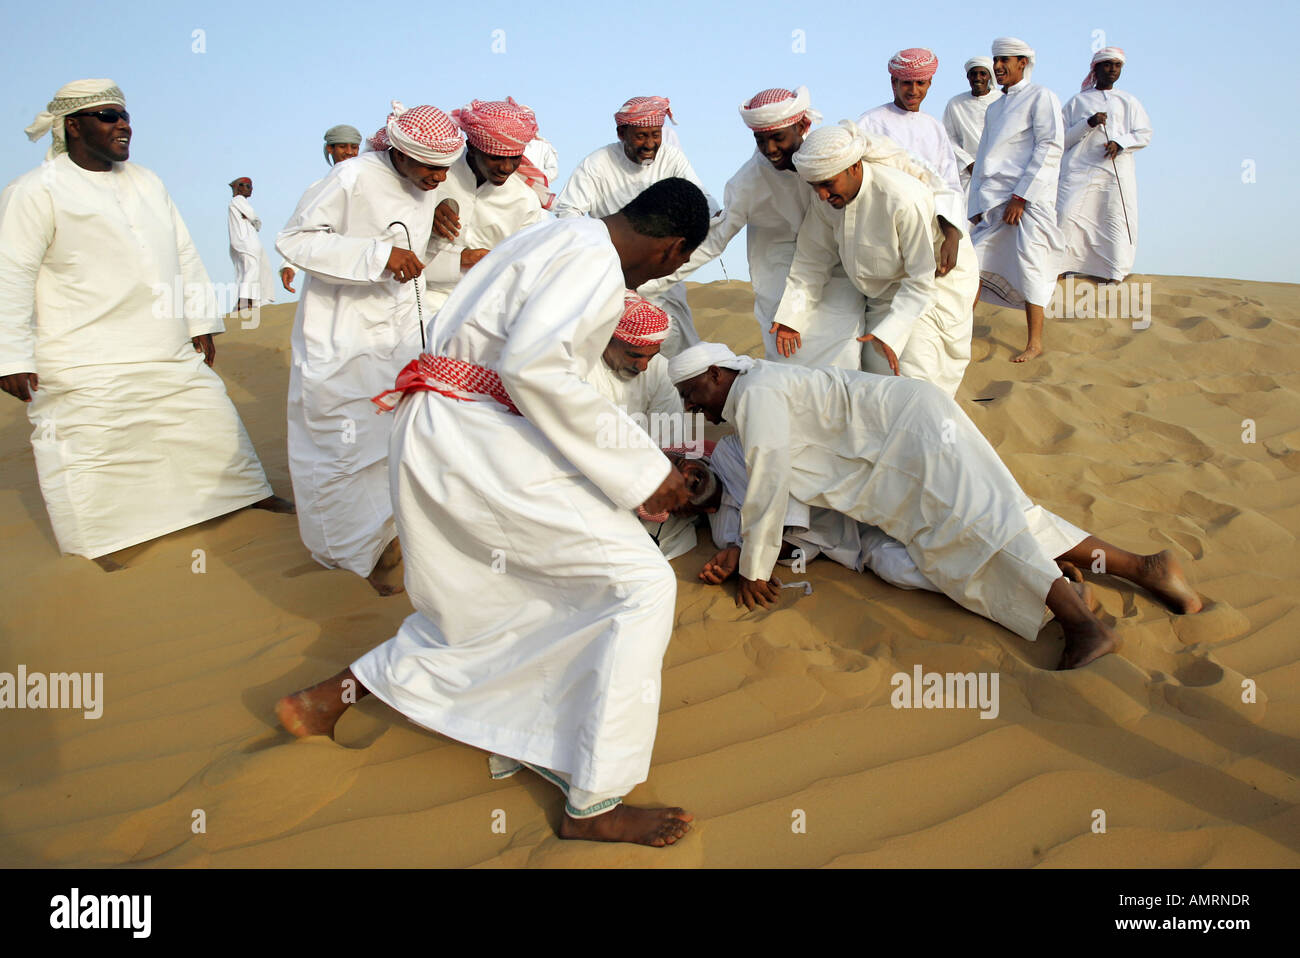 Arab men in the desert Stock Photo 